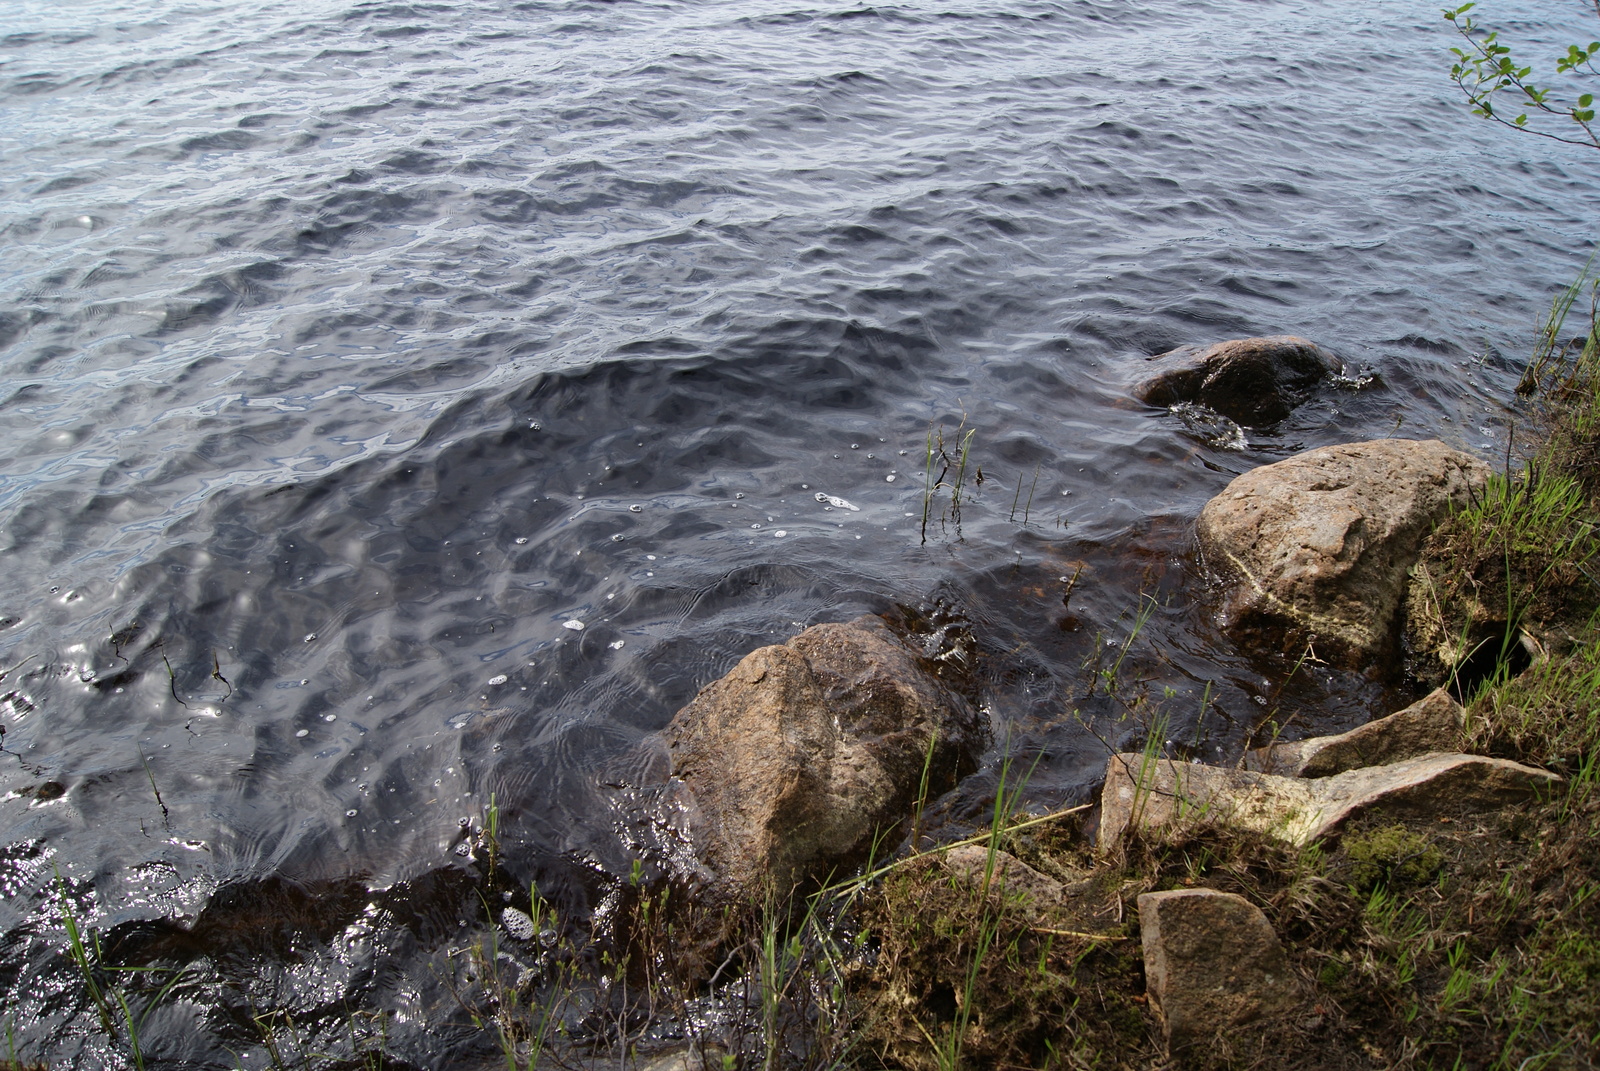 Vesi laineilee rantakiviä vasten. Kivien lomassa kasvaa vesikasveja harvakseltaan.